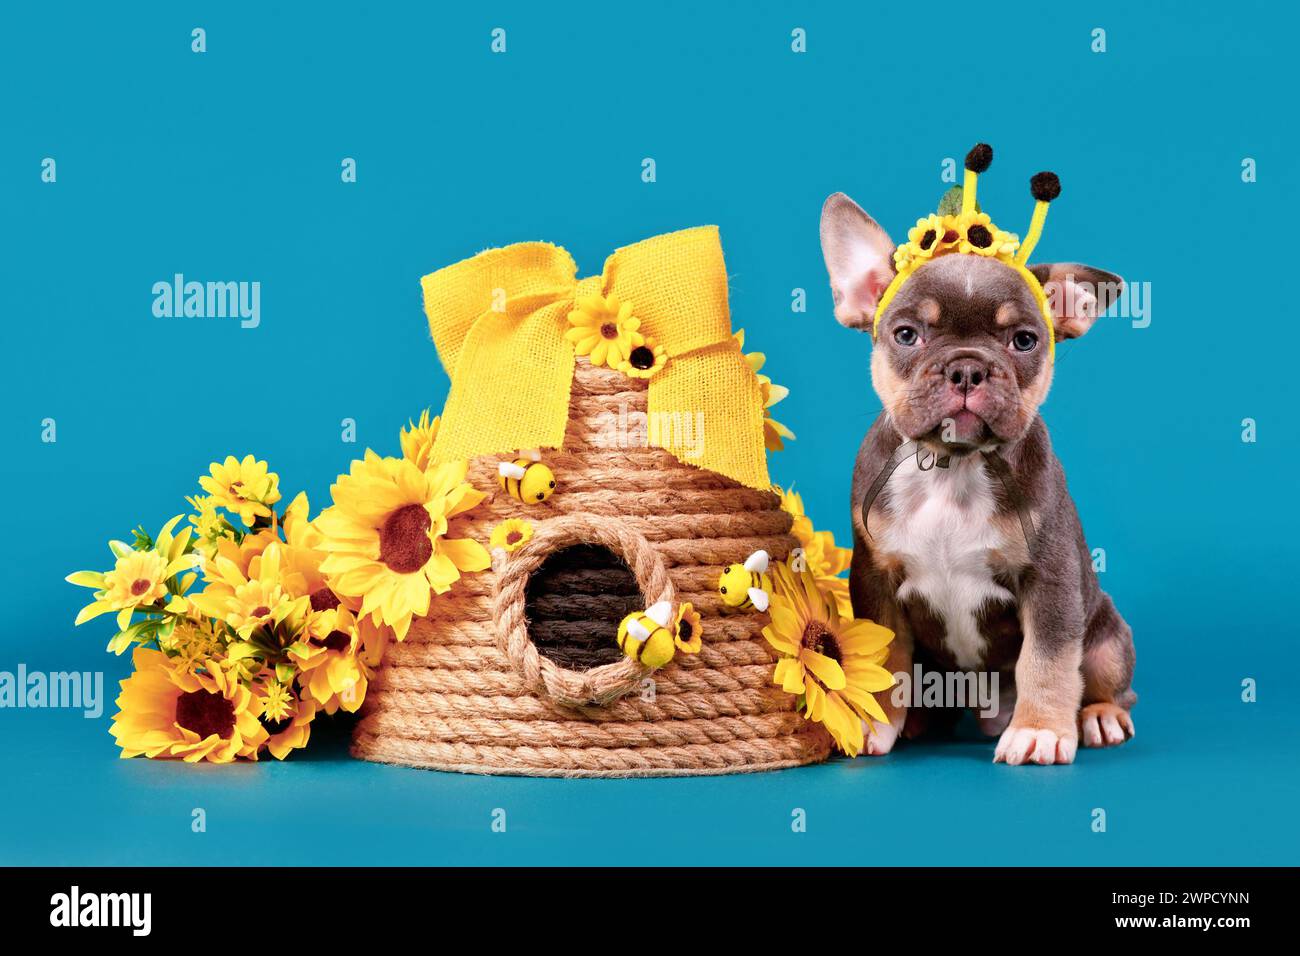 Simpatico cucciolo di cane Bulldog francese abbronzato con corna in costume di api seduto accanto all'alveare e girasoli su sfondo blu Foto Stock